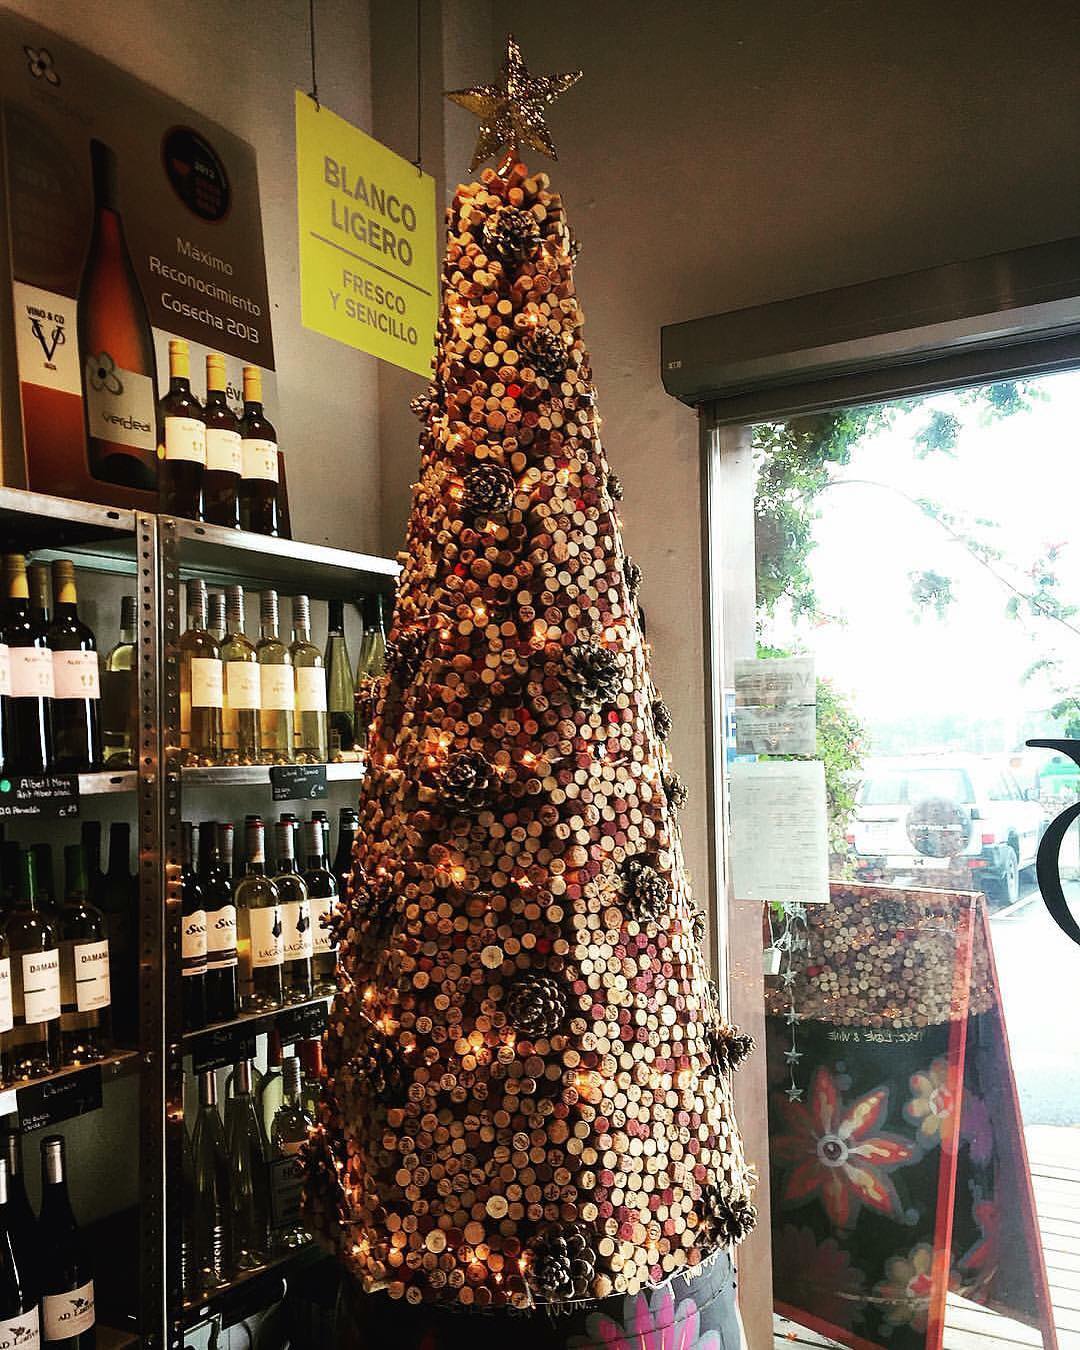 Our Christmas tree two years ago 😍
This year we have a real one with cork decorations! 🎄

Nuestro árbol de Navidad de hace dos años 😍
Este año tenemos uno de verdad con decoraciones de corcho! 🎄
@vinoycoibiza #vinoyco #vinoycoibiza #ibiza #eivissa #winebar #wineshop #winelovers #ibizawine #foodies #bistro #ibizarecommendation #winelovers #ibizawinebar #foodandwine #ibiza2018 #ibiza❤️ #amantesdelvino #ibizawinter #corktree #creativewithcork #christmasdecoration #handmadedecorations